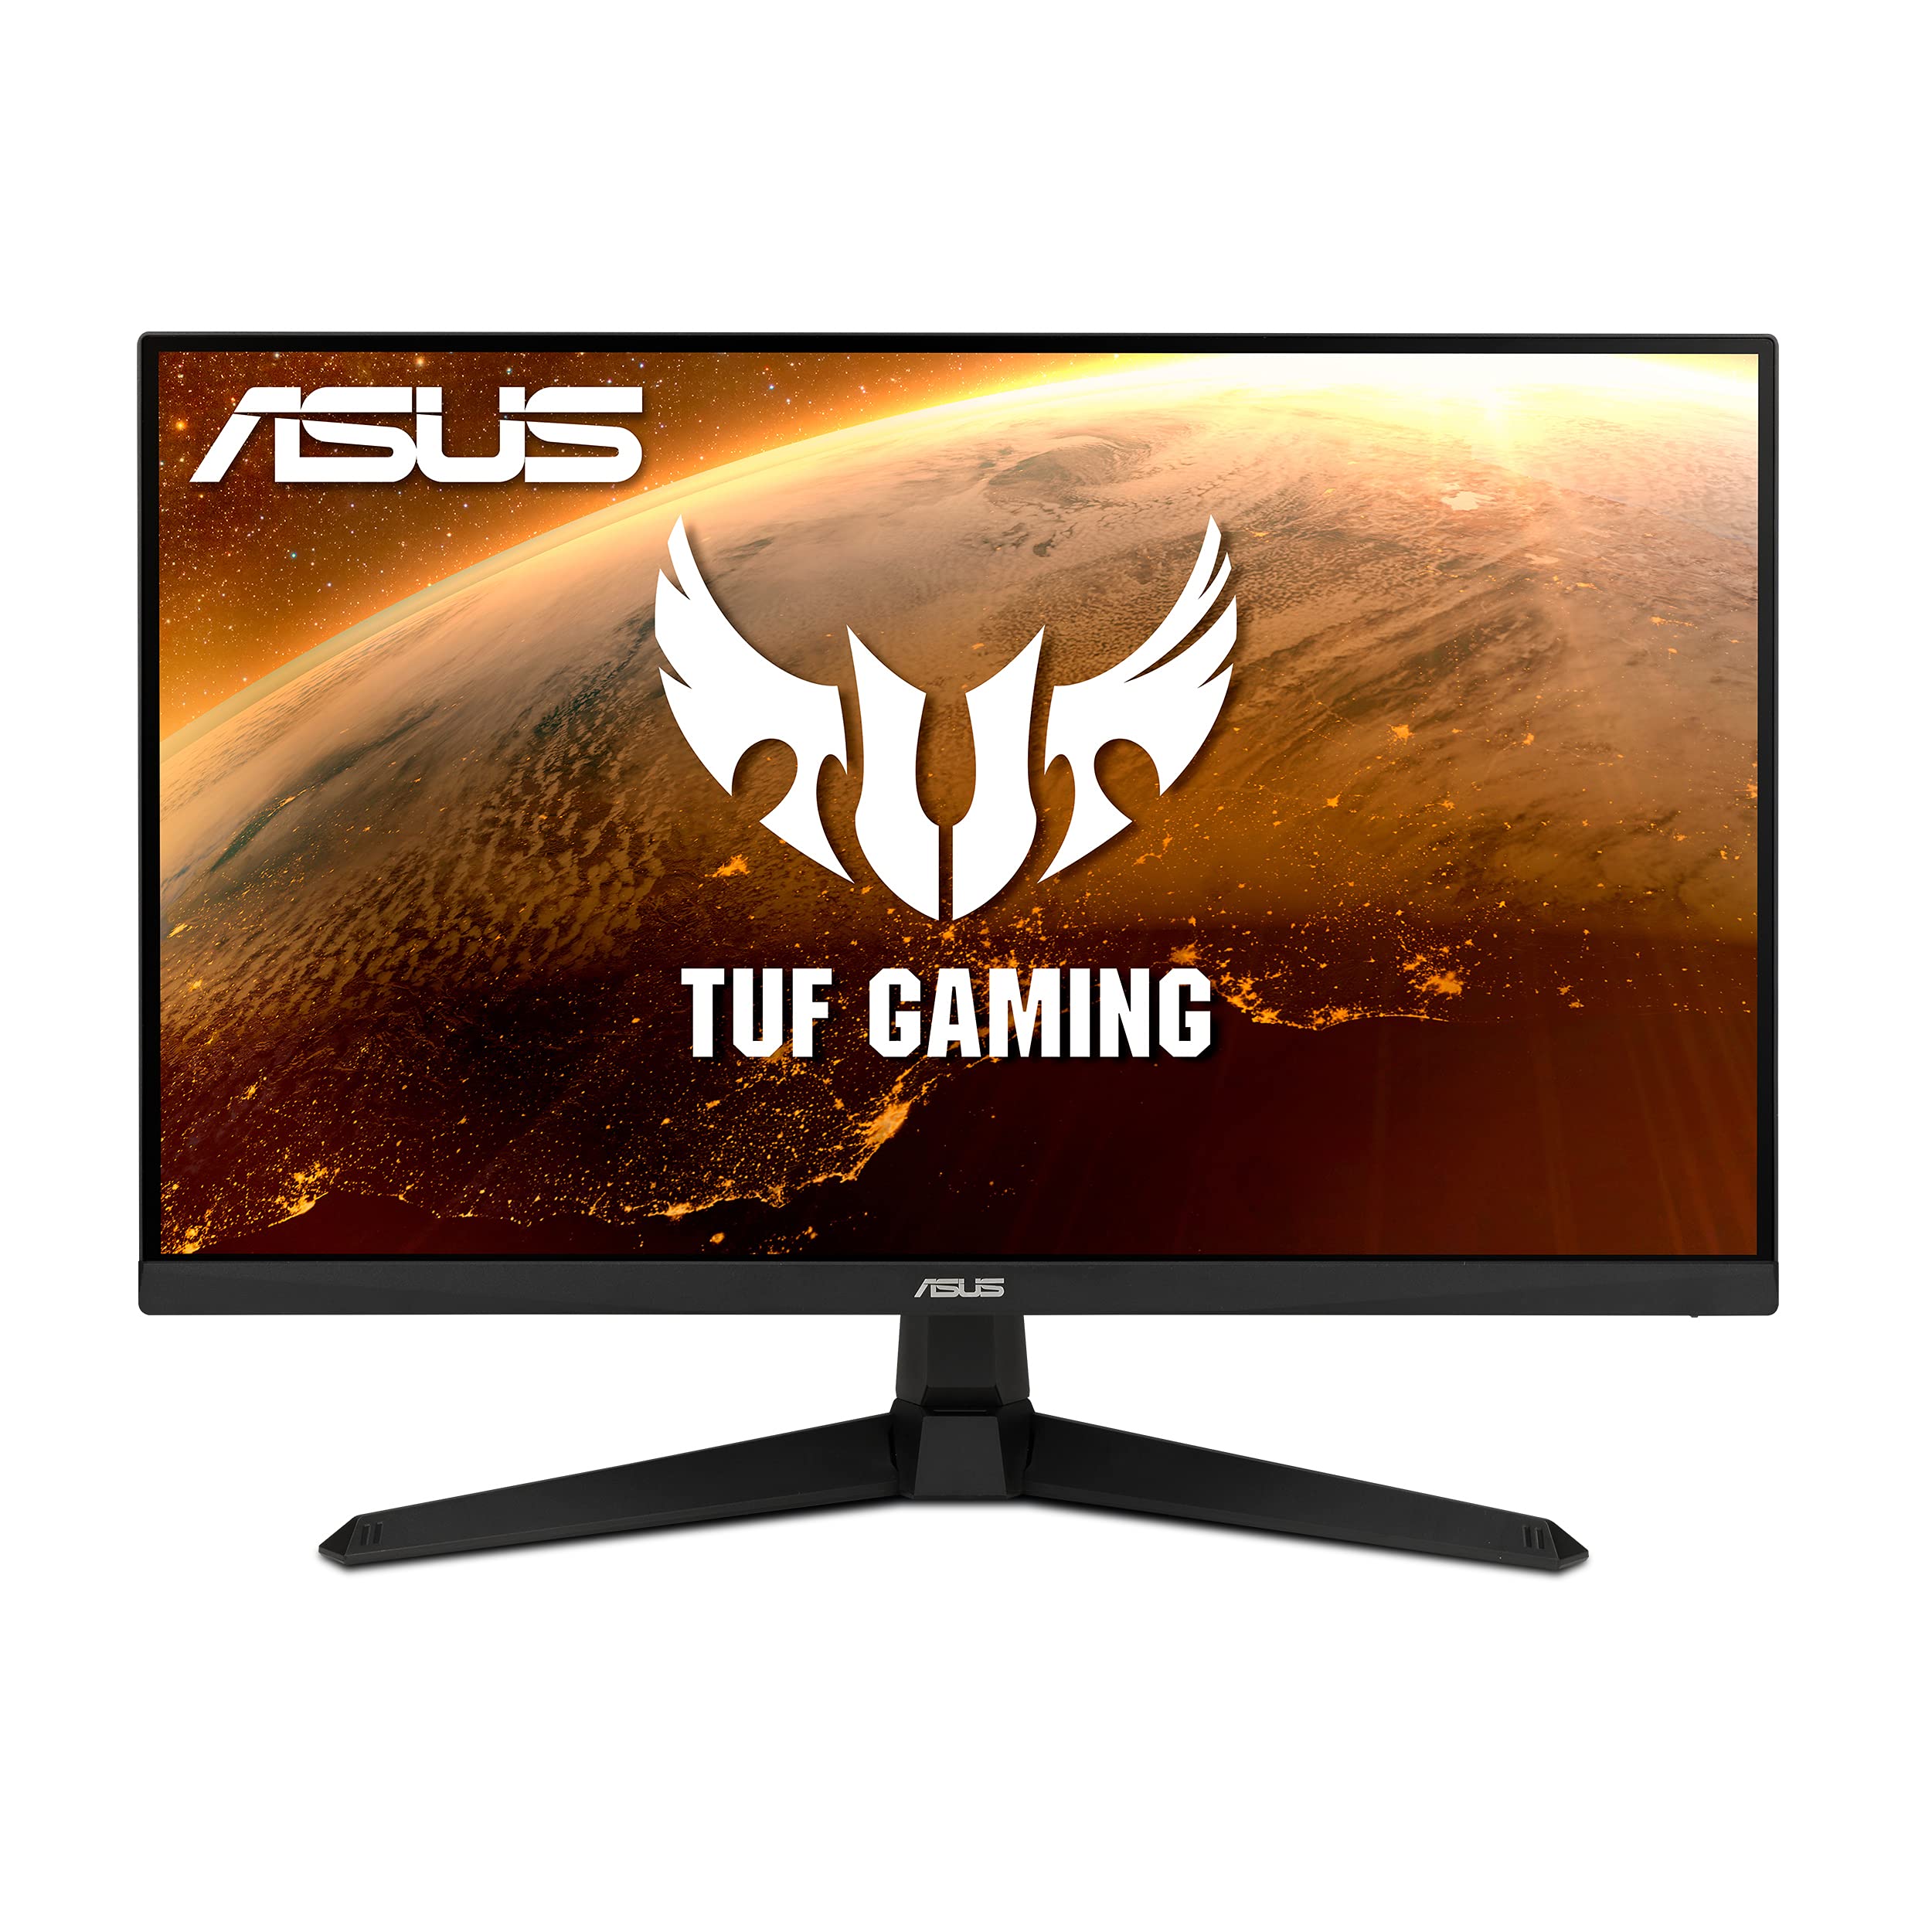 Asus TUF Gaming 27 1080P 游戏显示器 (VG277Q1A) - 全高清、165Hz（支持 144Hz）、1ms、极低运动模糊、FreeSync Premium、阴影增强、护眼、HDMI、DisplayPort、倾斜可调